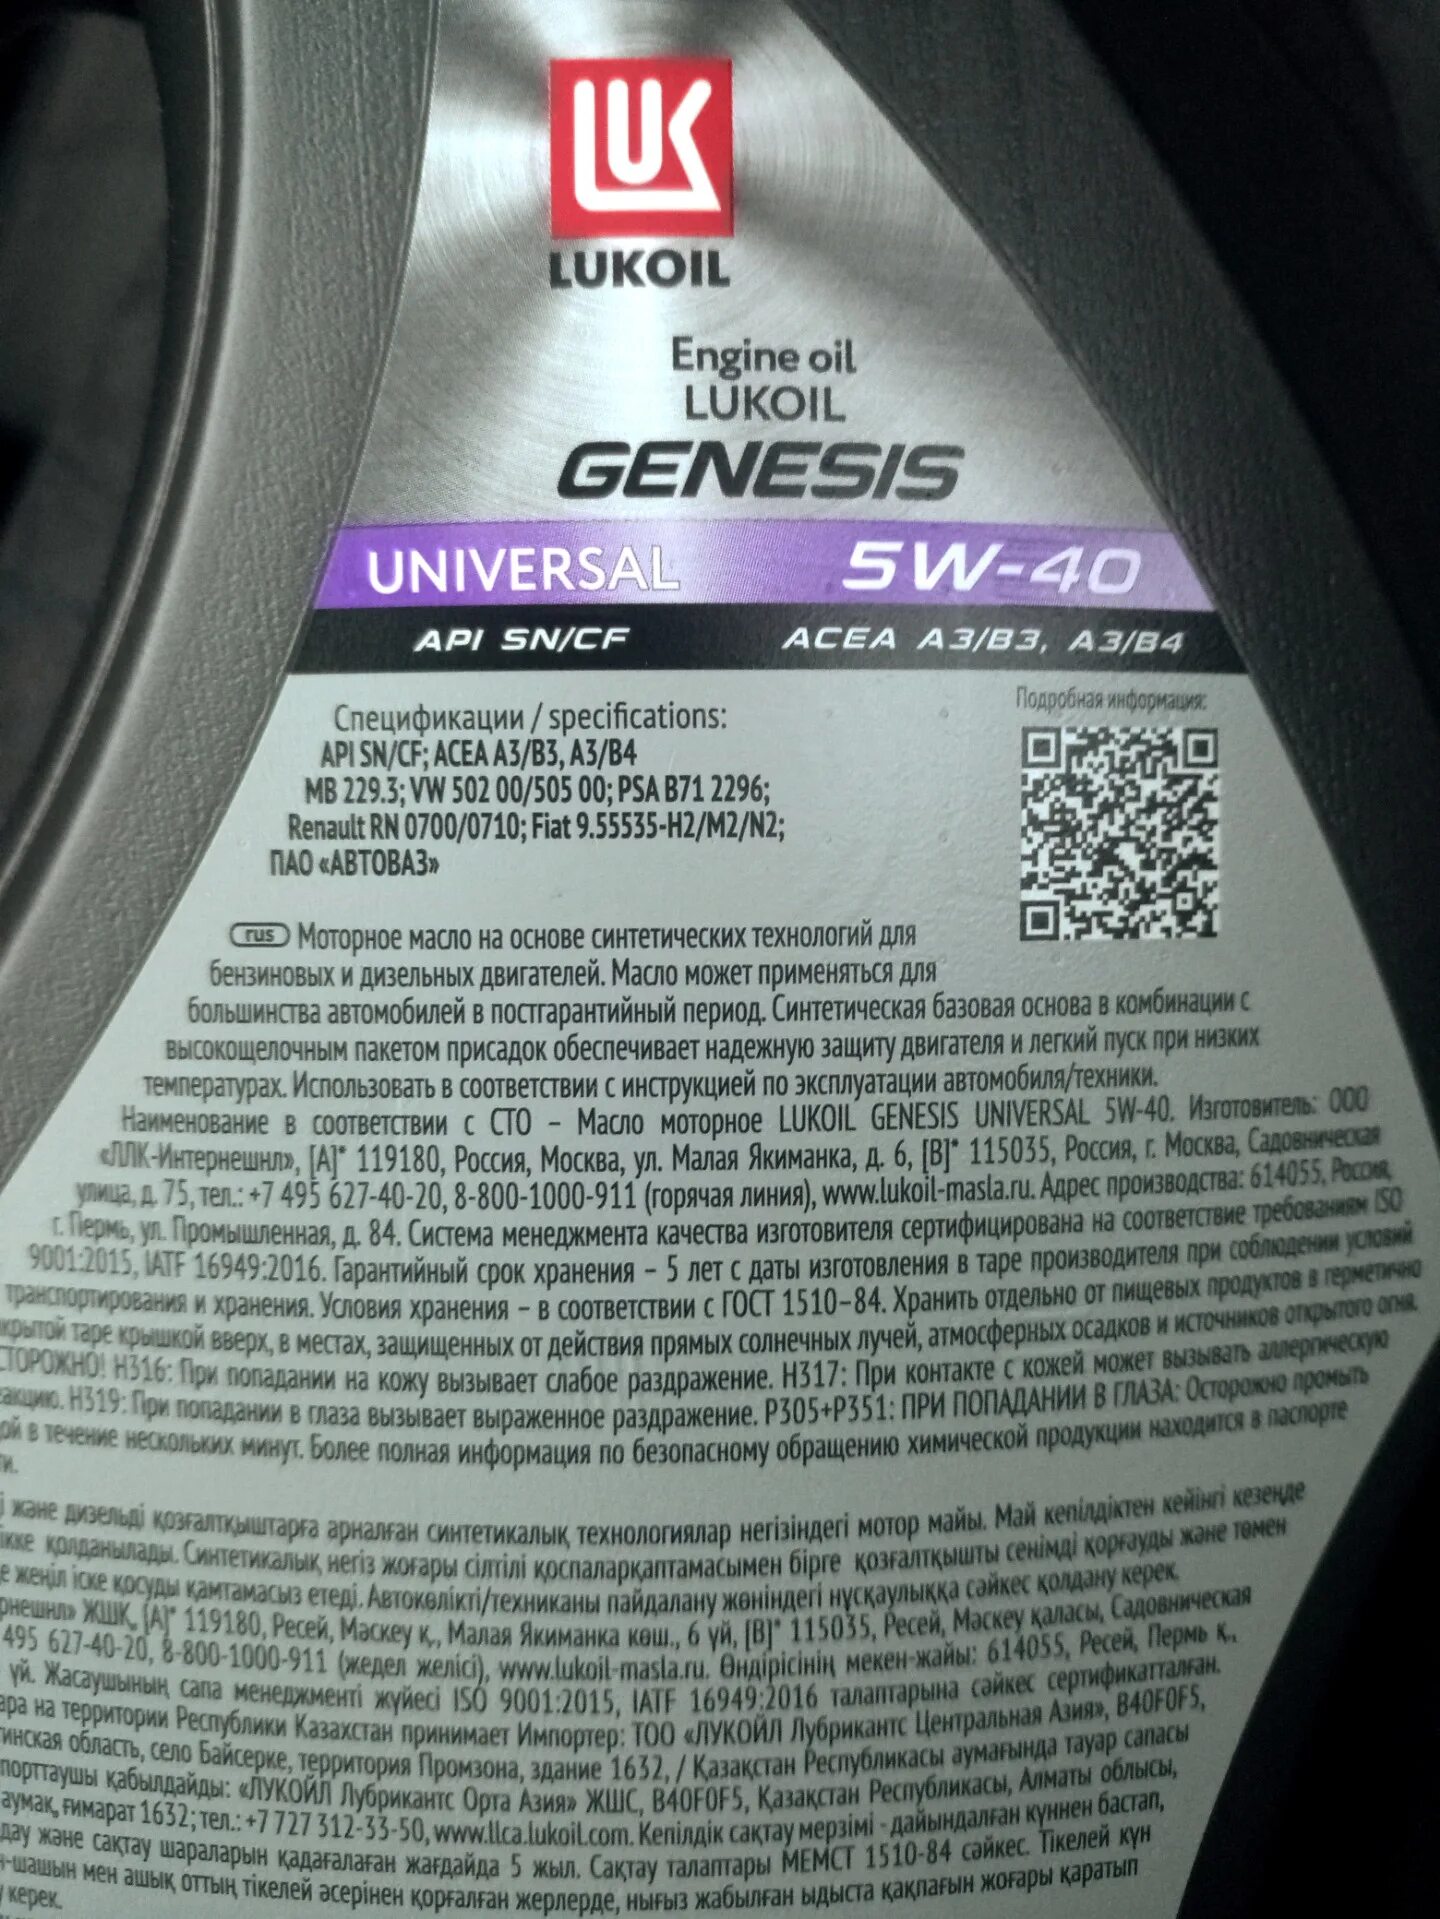 Лукойл Genesis Universal 5w40. Genesis Universal 5w-40. Lukoil Genesis Universal 5w-40. Лукойл масла Genesis Universal. Масло лукойл универсал 5w40